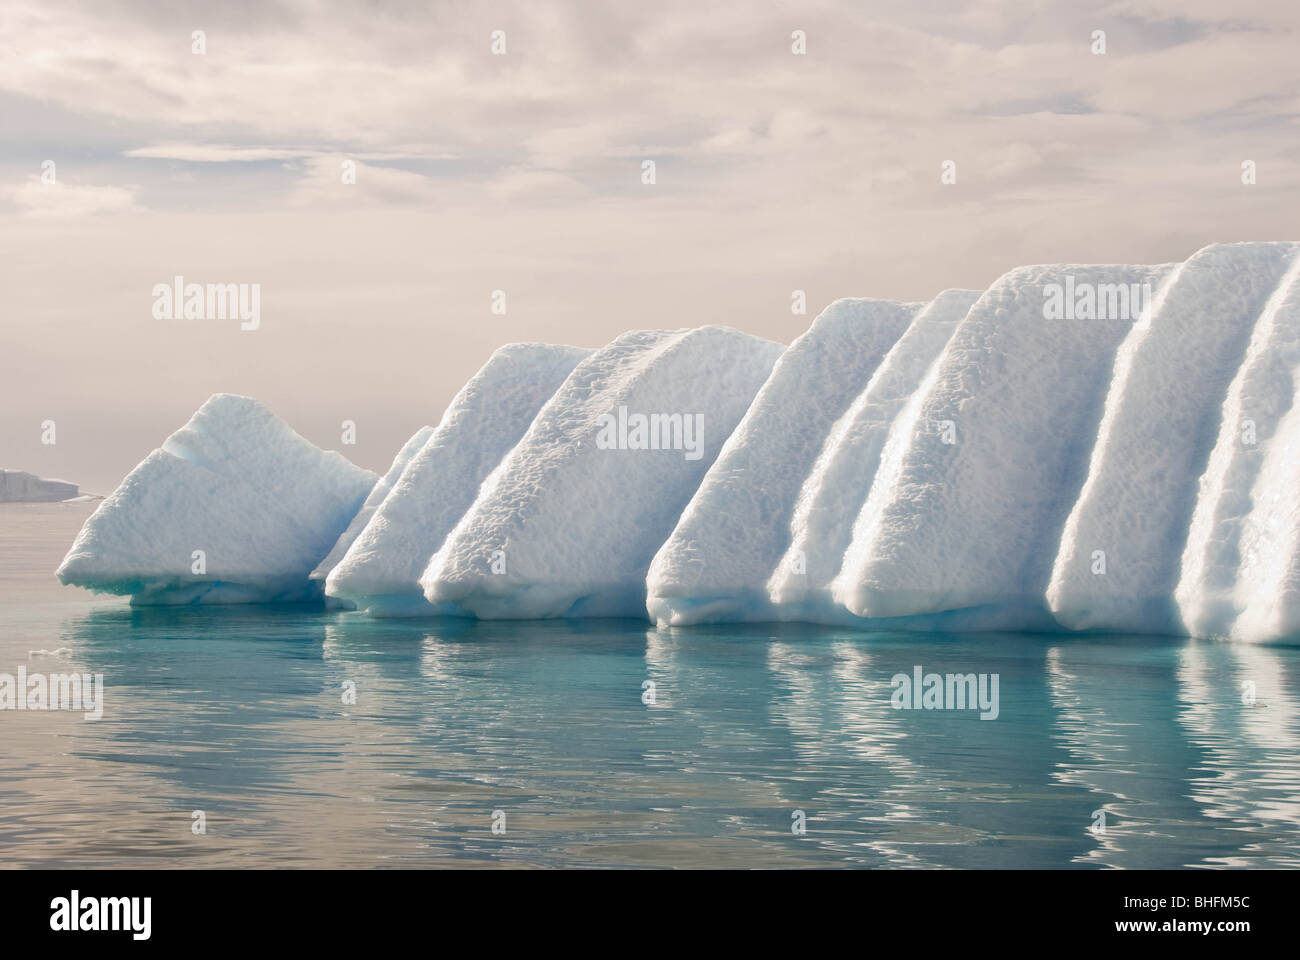 El derretimiento de un iceberg aprovechando las debilidades debido a las capas de nieve original crea una forma inusual. Foto de stock